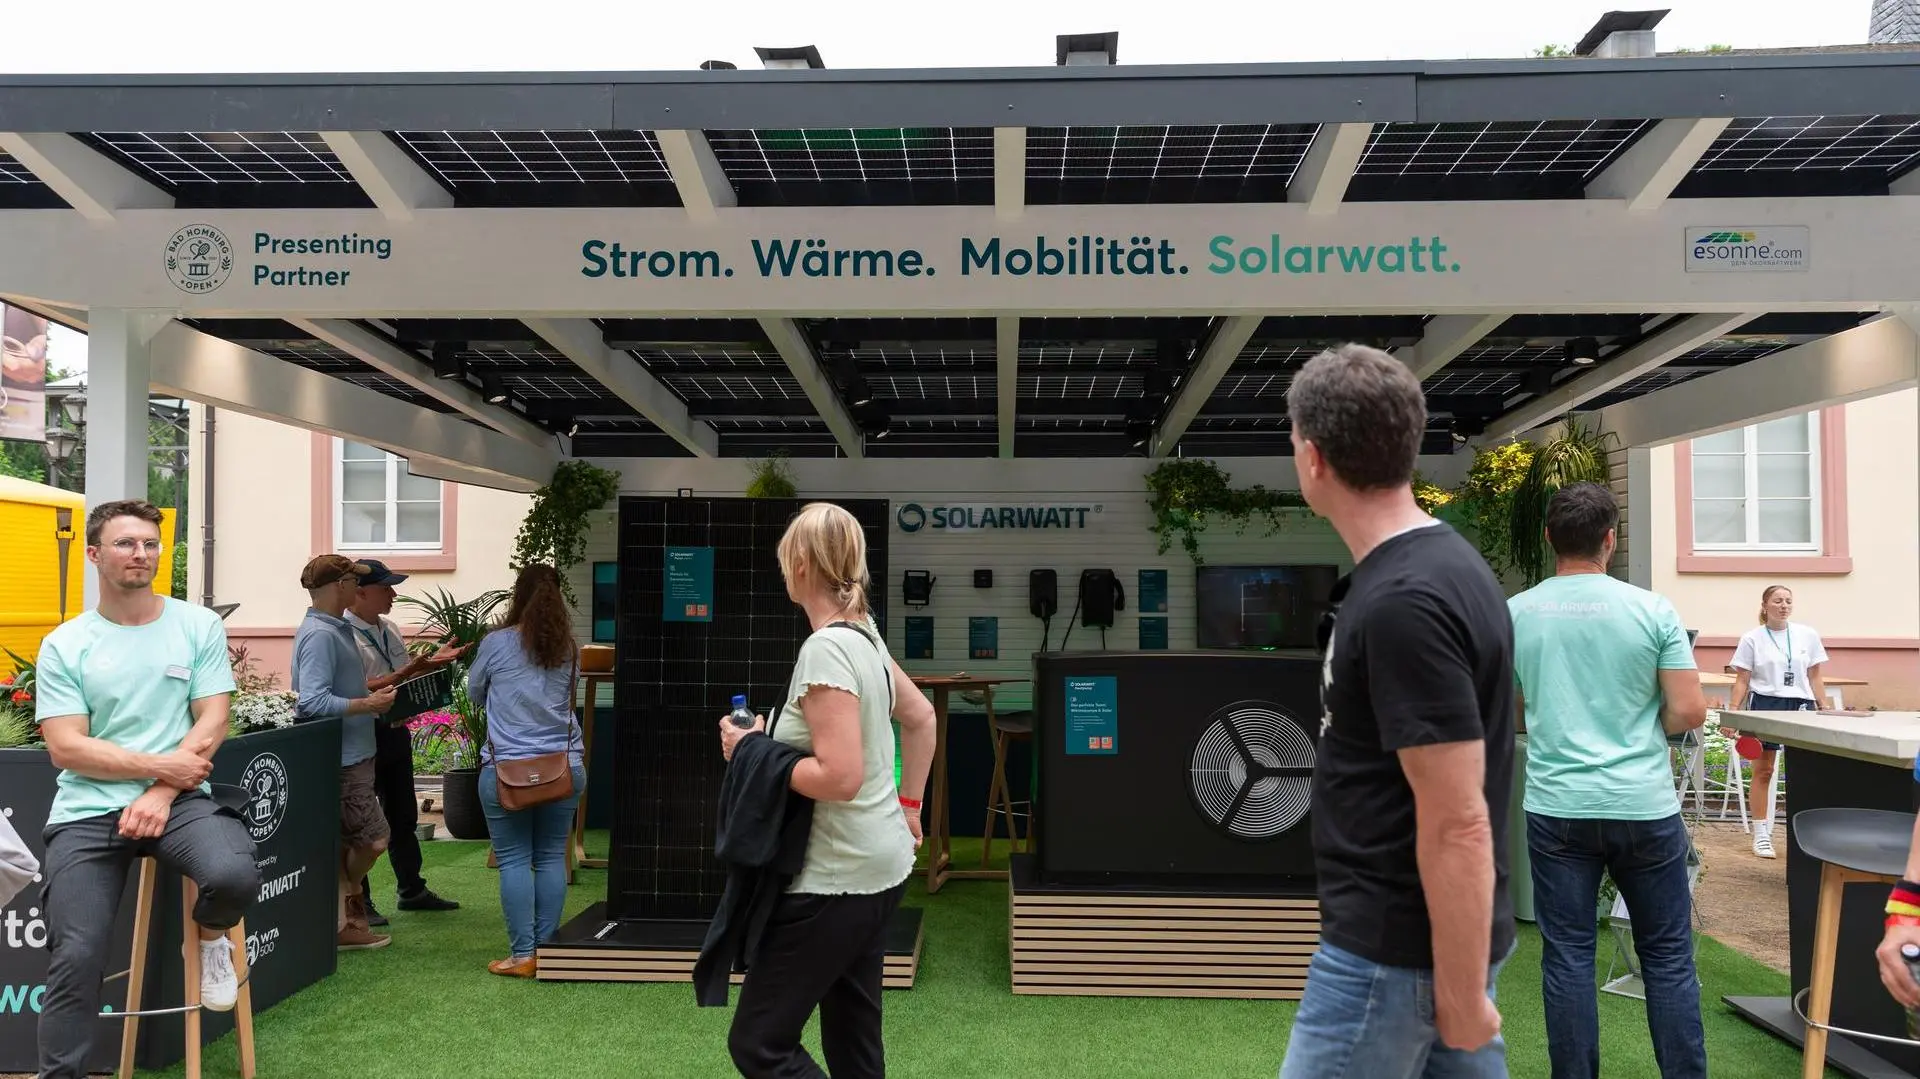 Solarwatt Infostand unter einem Solar-Carport